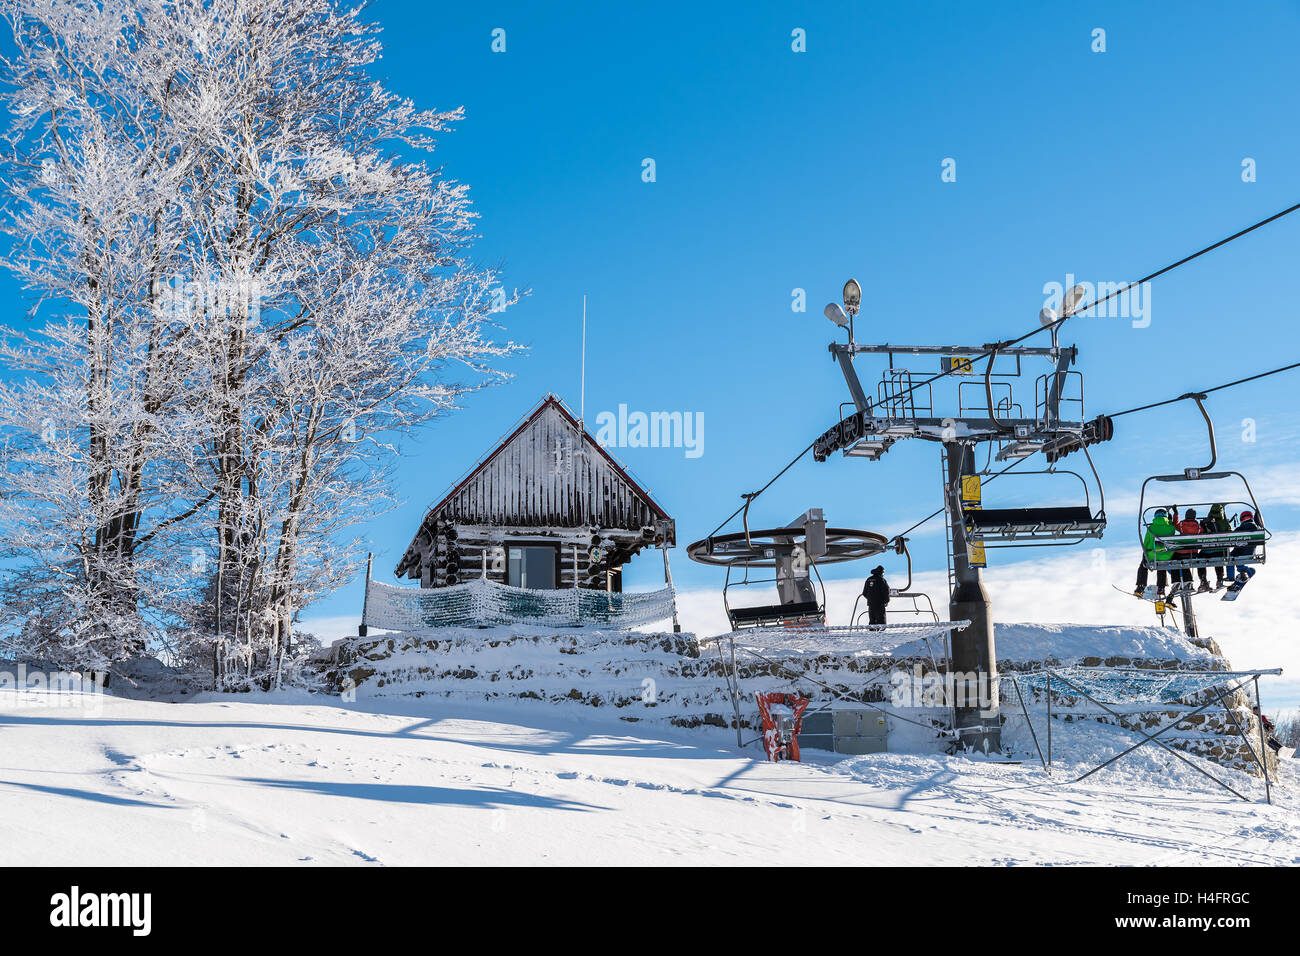 WIERCHOMLA SKI RESORT, Polonia - 31 DIC 2014: ski lift e pendenza nel paesaggio invernale di Beskid Sadecki montagne. Lo sci è sport popolari nel sud della Polonia. Foto Stock